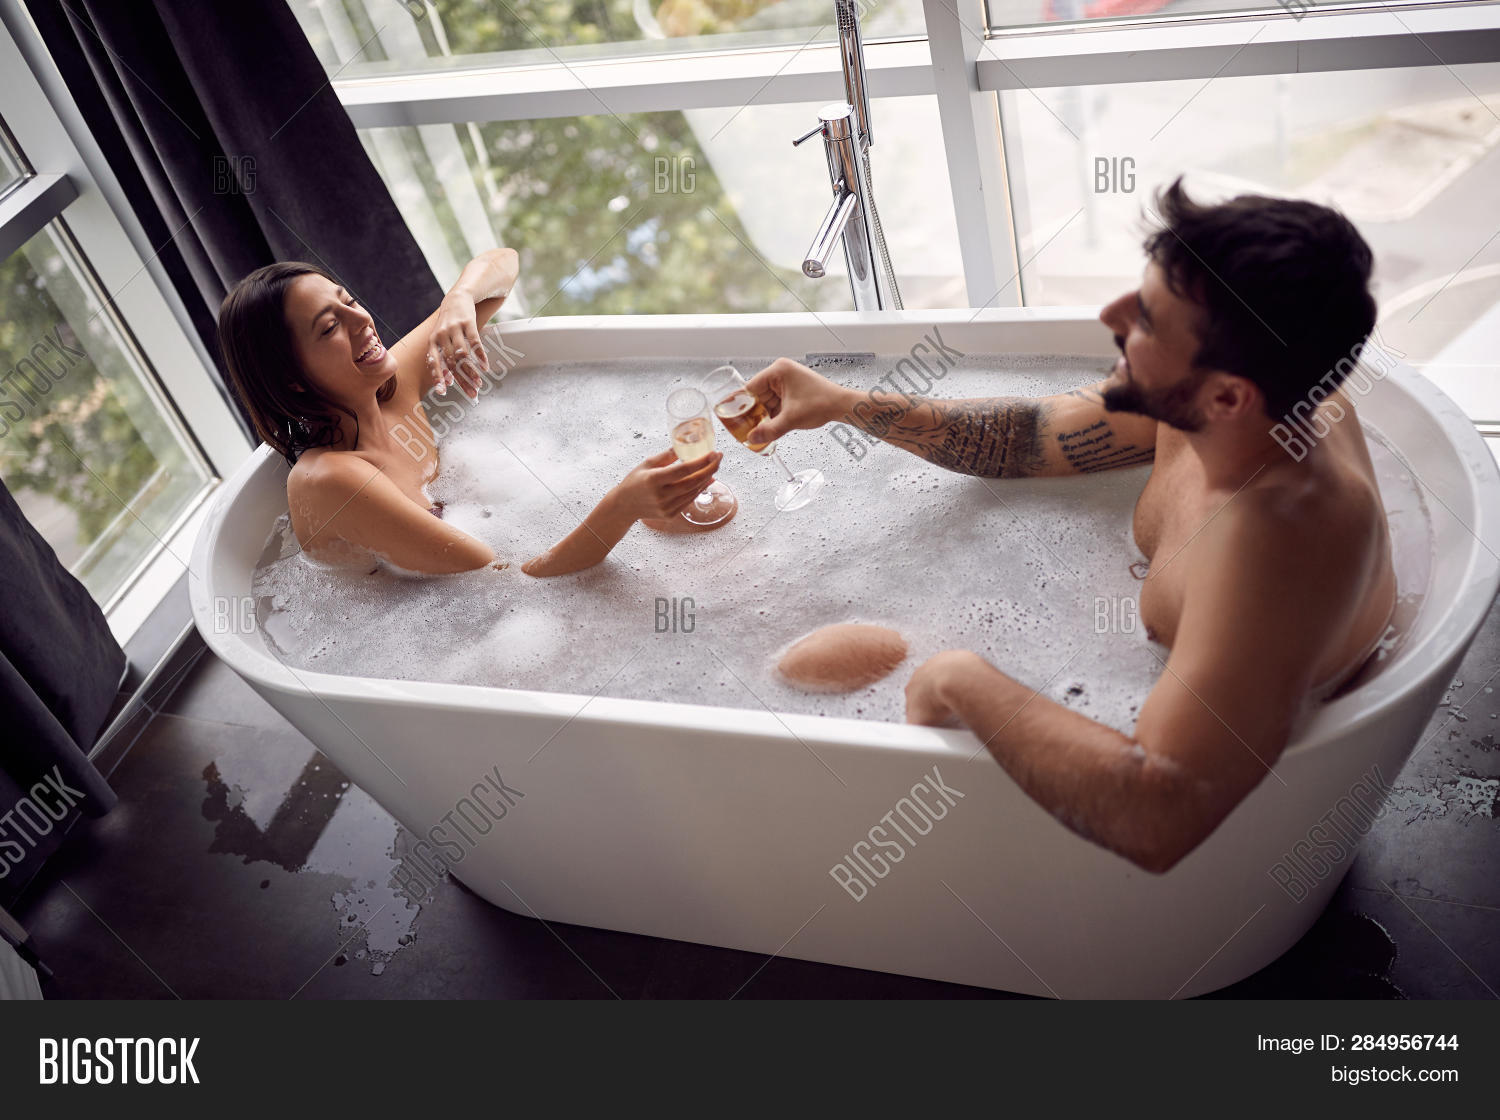 bridget brantley recommends sexy bath tub pics pic